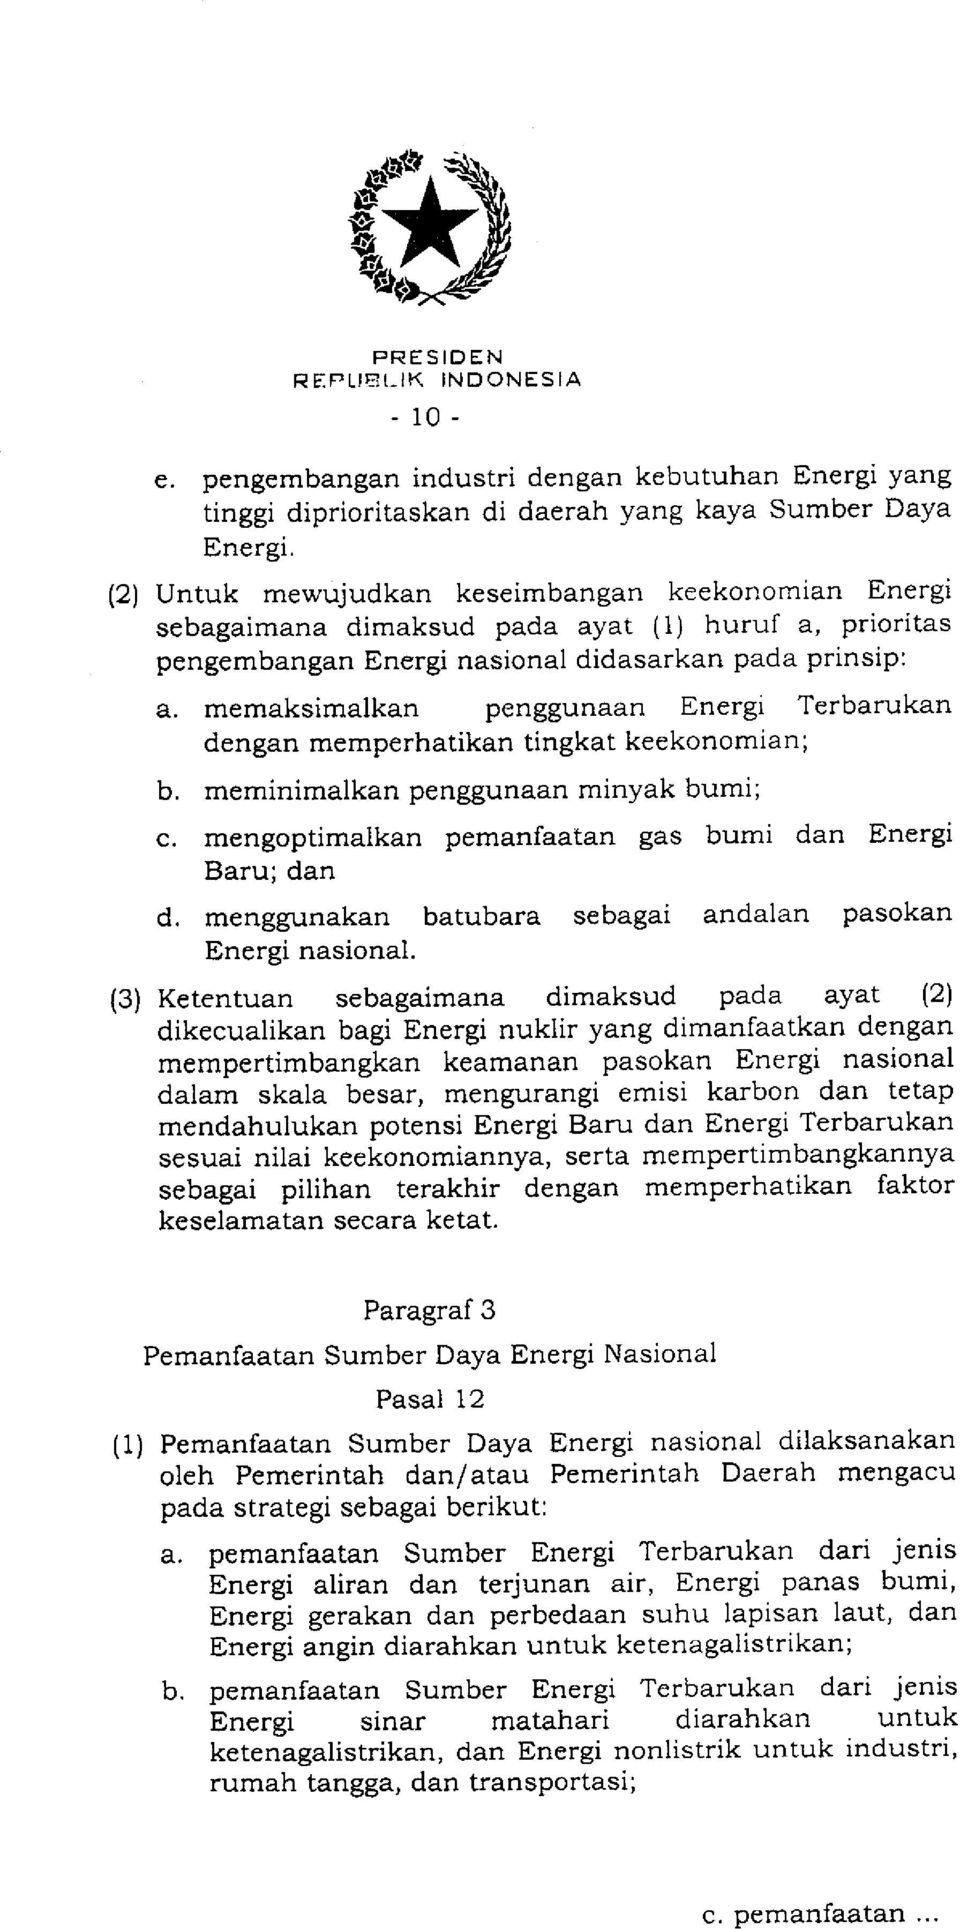 memaksimalkan penggunaan Energr Terbarukan dengan memperhatikan tingkat keekonomian; b. meminimalkan penggunaan minyak bumi; c. mengoptimalkan pemanfaatan gas bumi dan Energi Baru; dan d.